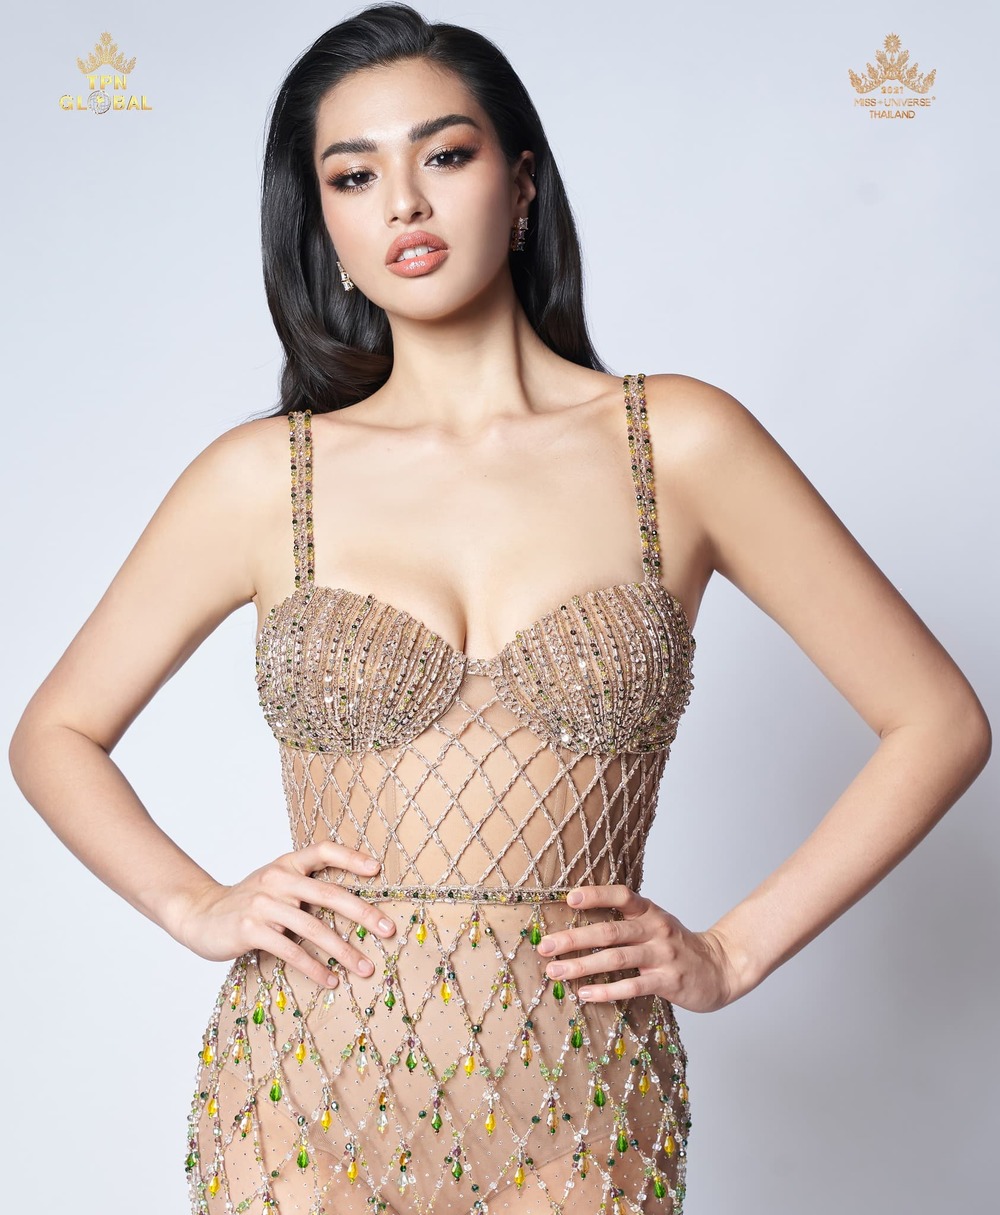  
Miss Universe Thái Lan Anchilee Scott-Kemmis là đại diện gây chú ý dù không lọt top cao. (Ảnh: Miss Universe Thailand) - Tin sao Viet - Tin tuc sao Viet - Scandal sao Viet - Tin tuc cua Sao - Tin cua Sao